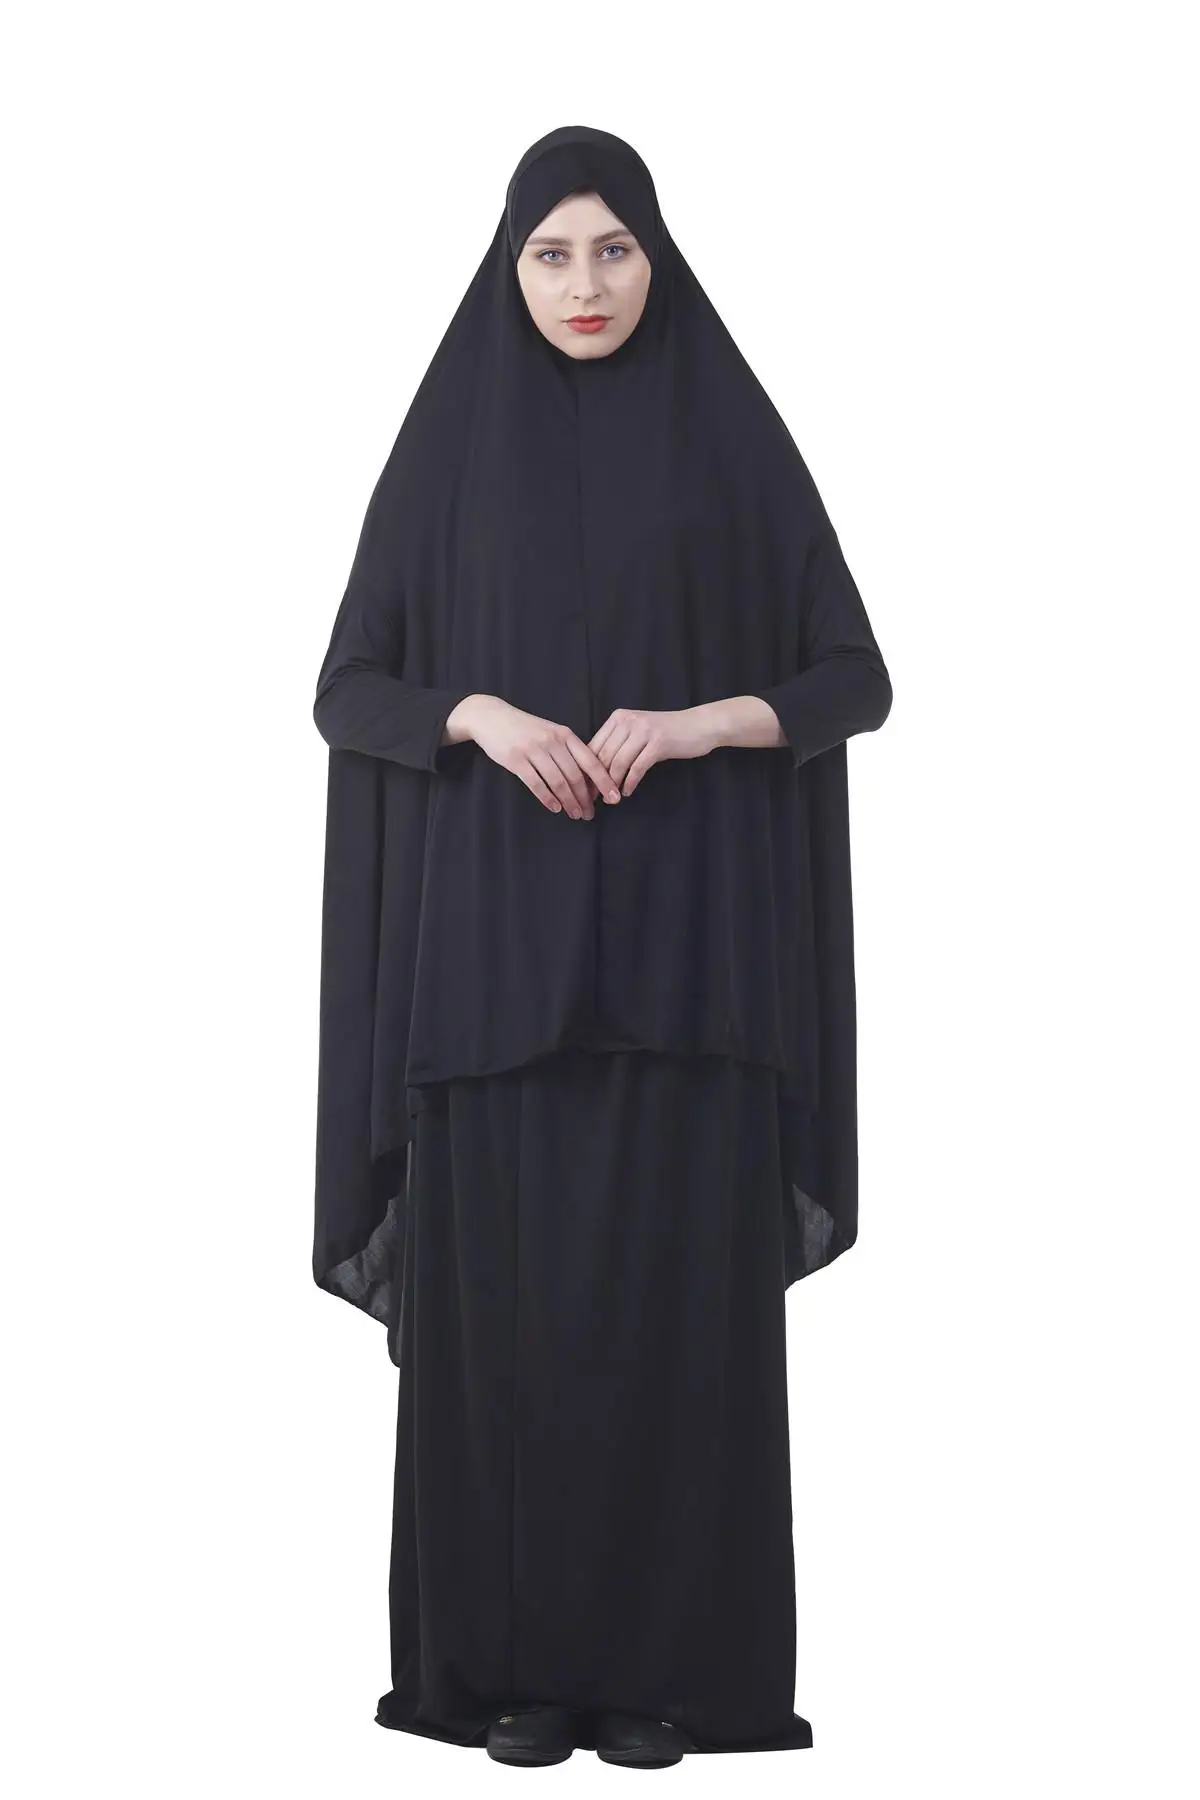 Формальные мусульманские молитвенные комплекты одежды, хиджаб, платье абайя, Исламская одежда, намаз, длинный молитвенный хиджаб, мослим юркен абайя s - Цвет: Black